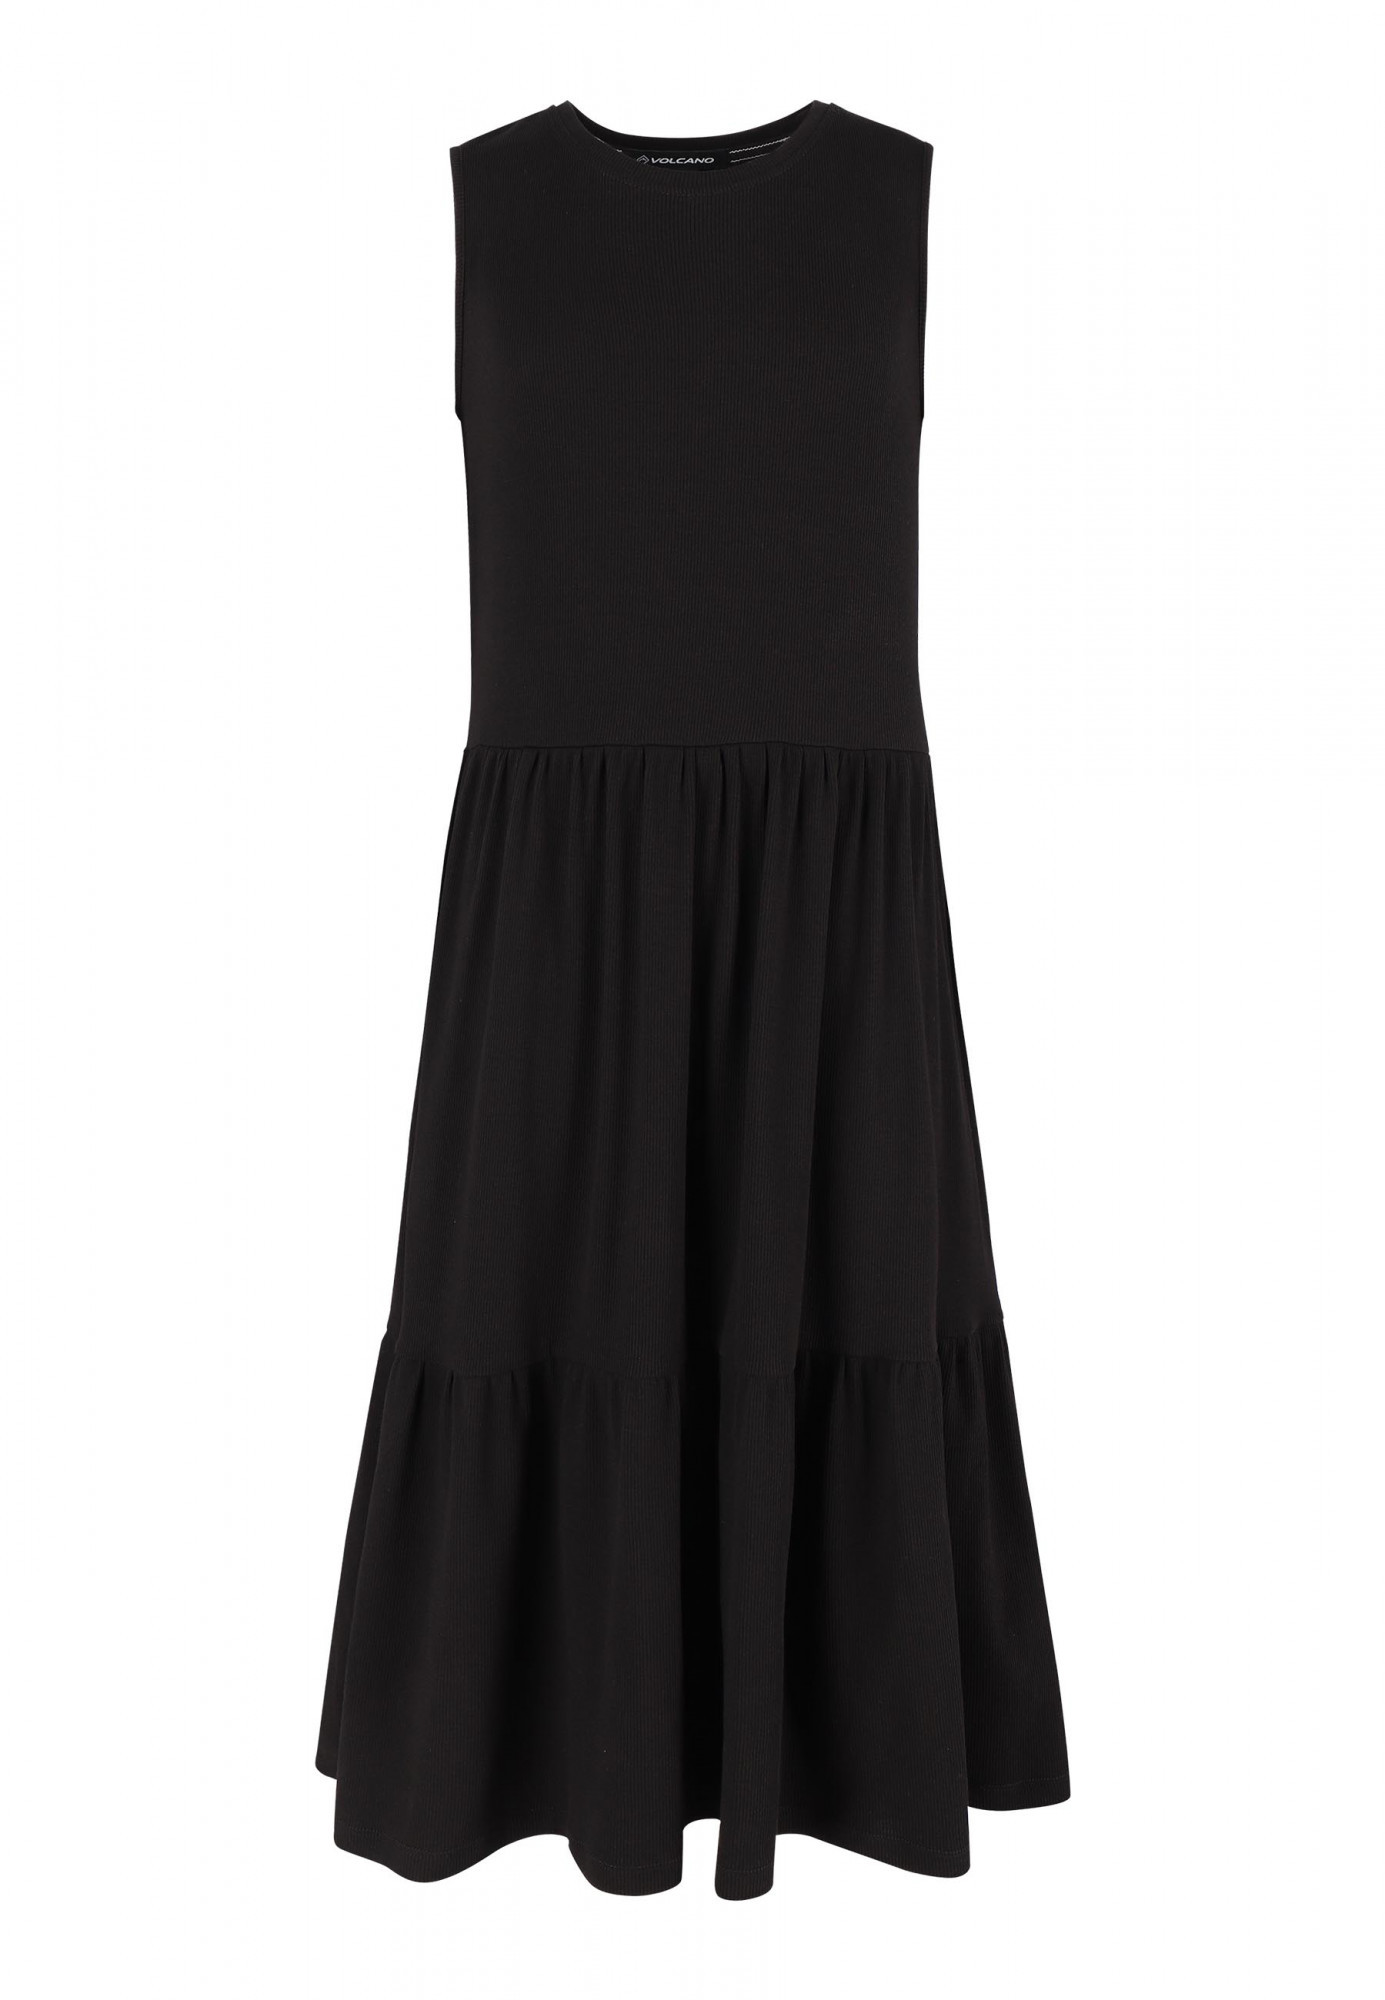 Dívčí šaty G-Nila Junior G08562 - VOLCANO 122-128 černá